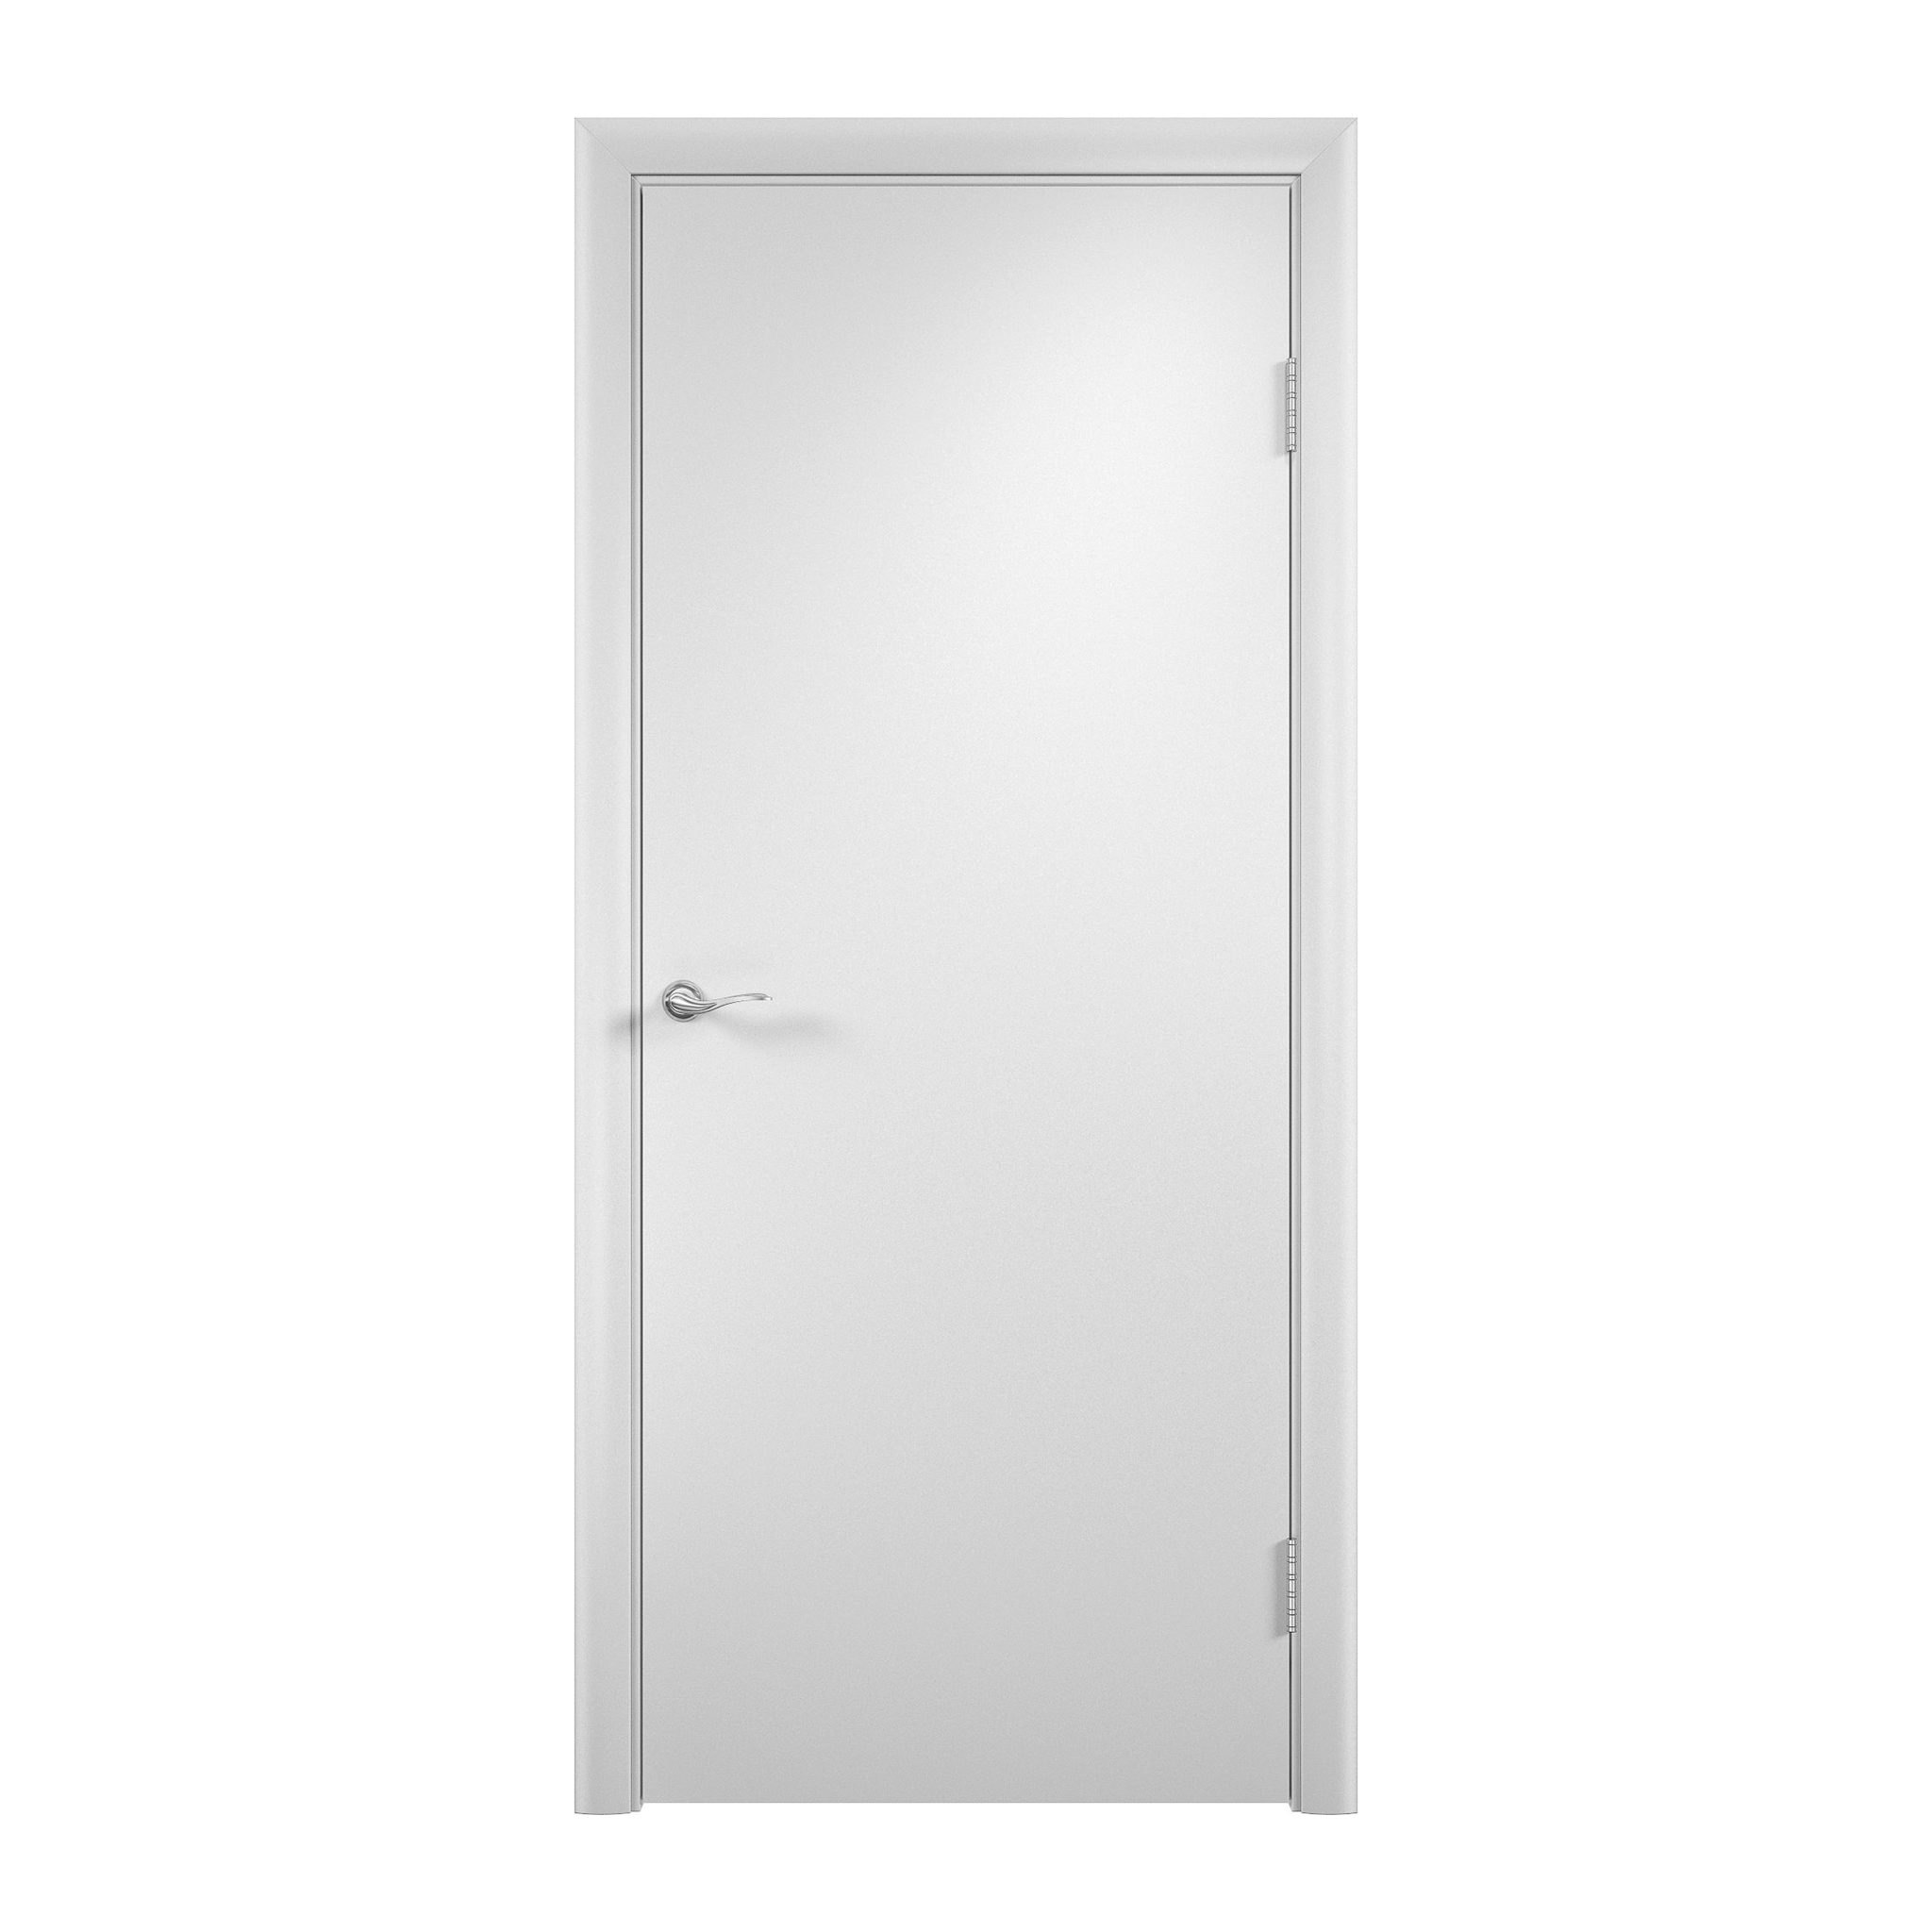 Белая дверь купить спб. Дверь белая глухая " канадка " ДГ-80. Дверное полотно VELLDORIS Ольсен белое глухое эмаль 600x2000 мм. Полотно дверное Olovi. Дверное полотно Verda ДПГ белое глухое.